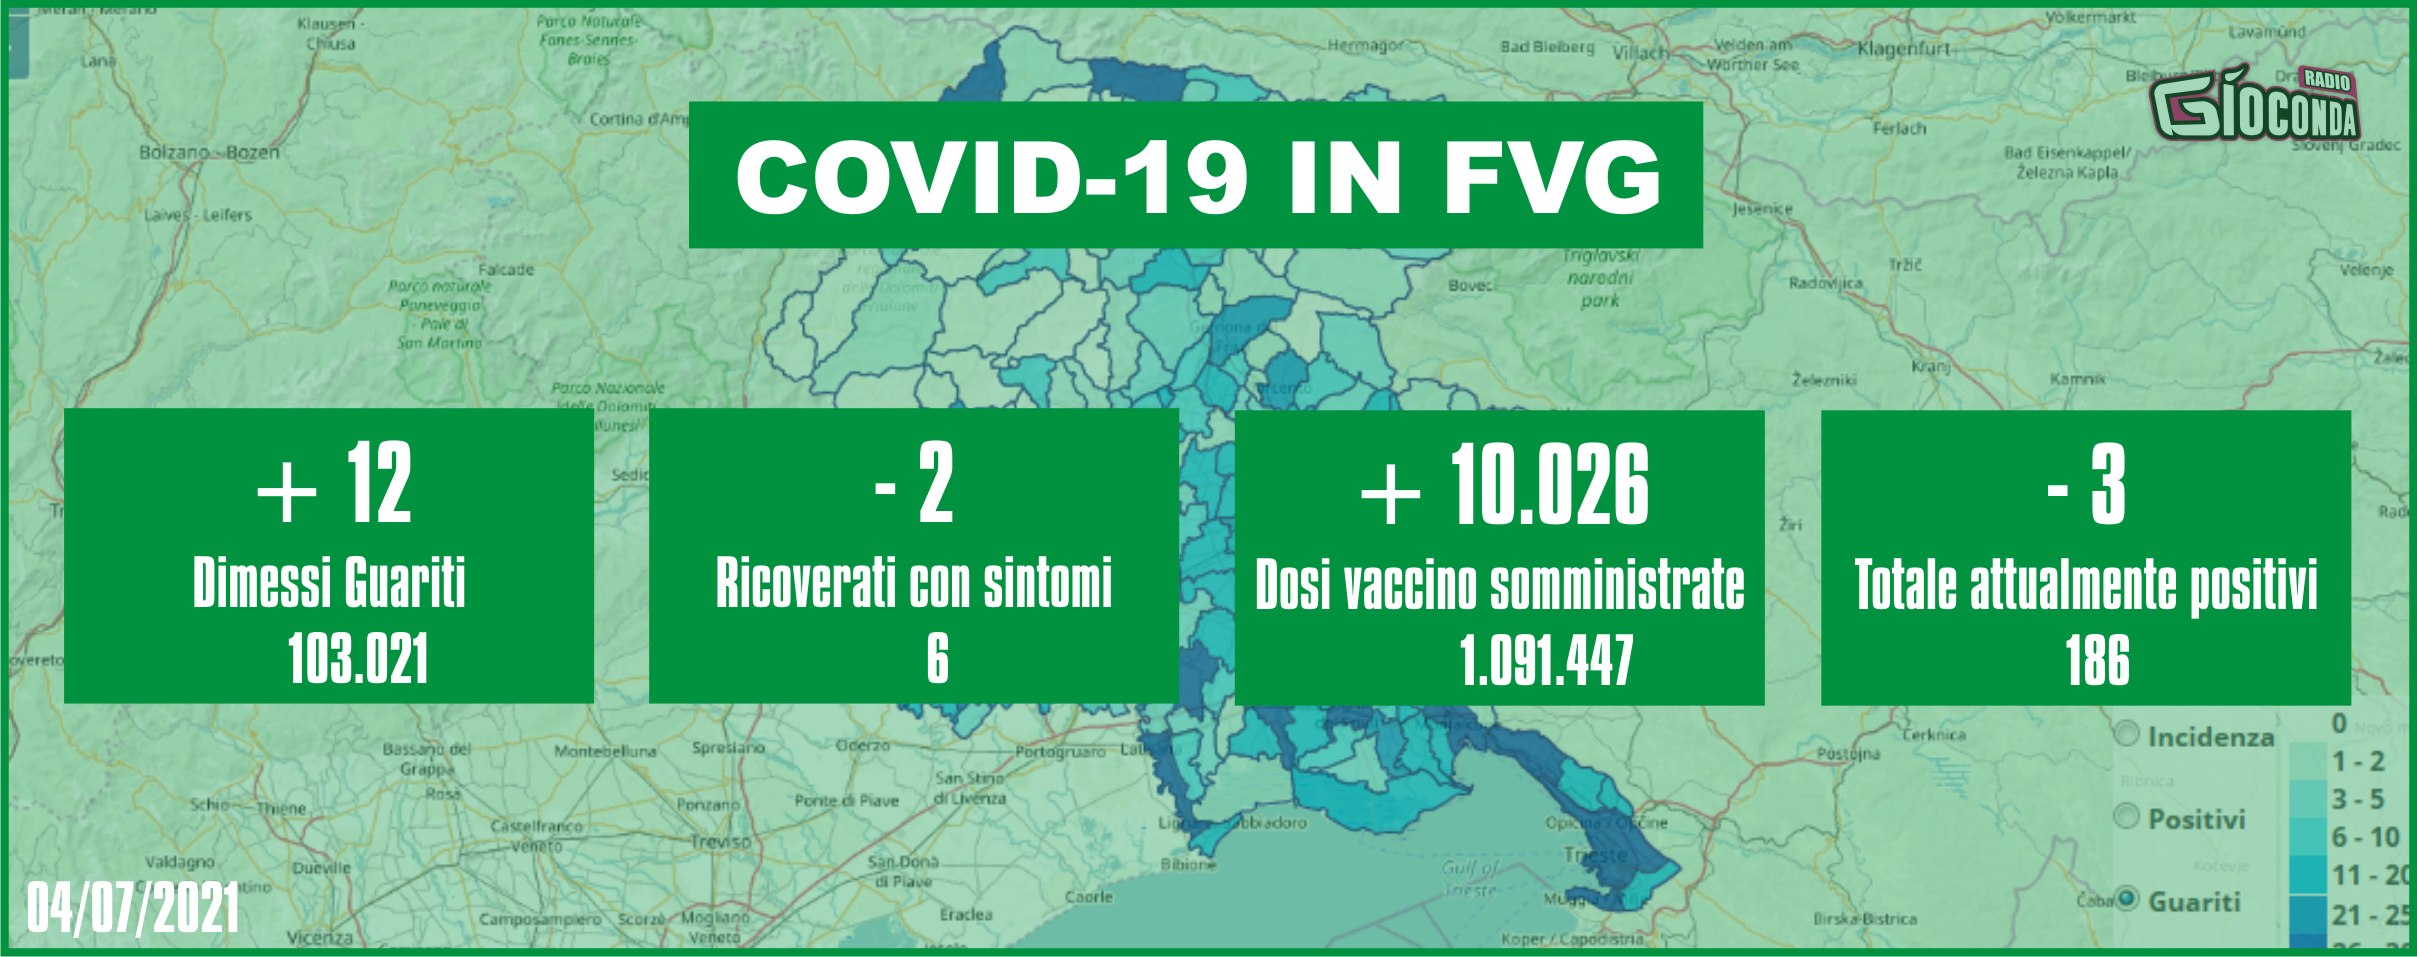 4 luglio 2021 - Aggiornamento casi Covid-19 Dati aggregati quotidiani FRIULI VENEZIA GIULIA